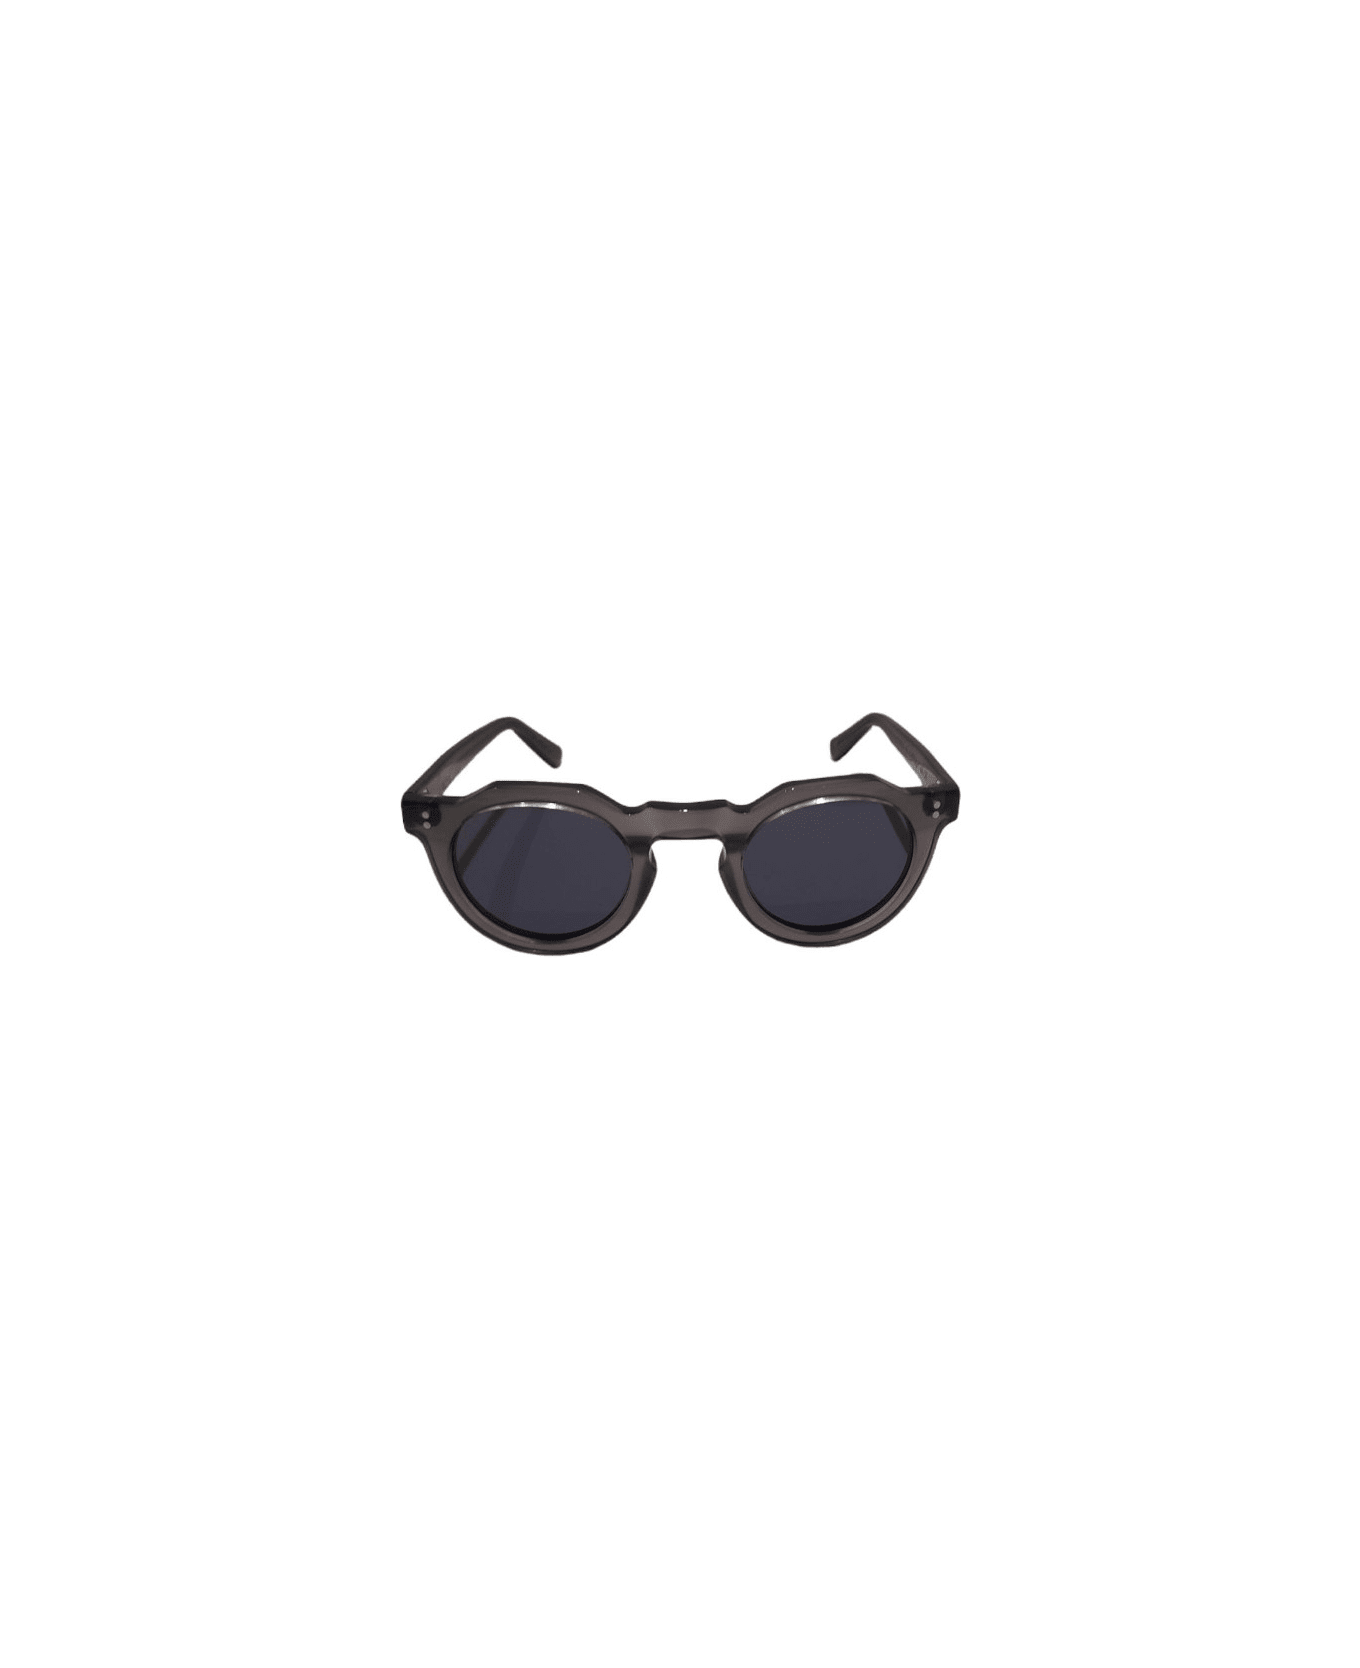 Lesca Picas grey Sunglasses - Grey